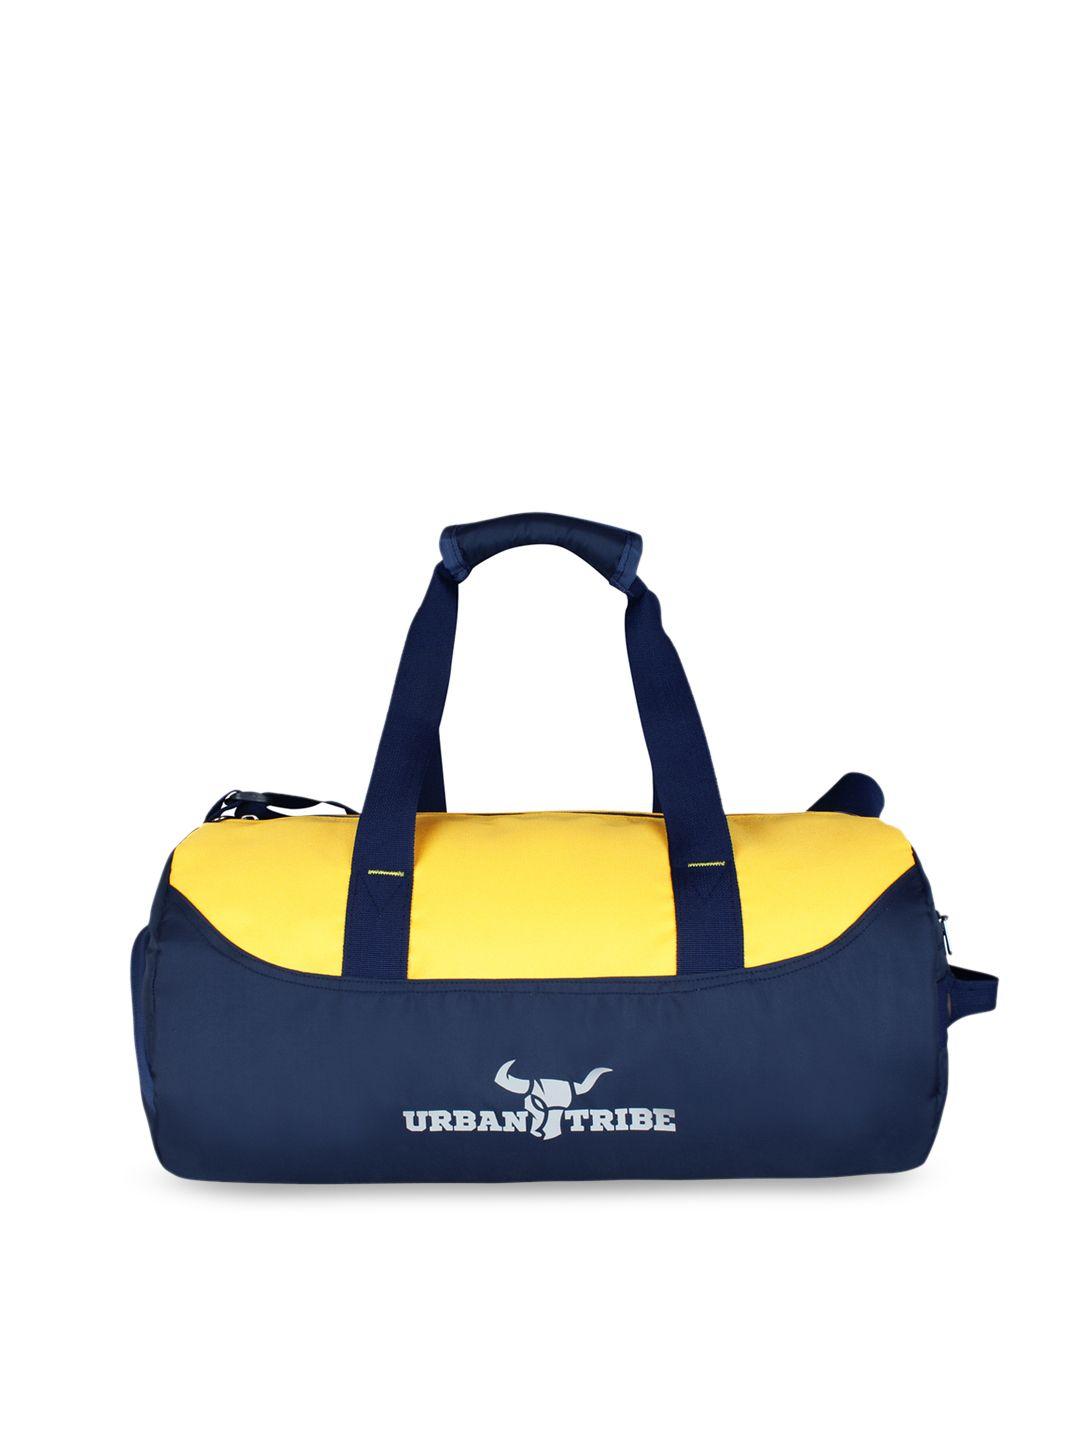 urban tribe bolt navy blue & yellow gym duffel bag